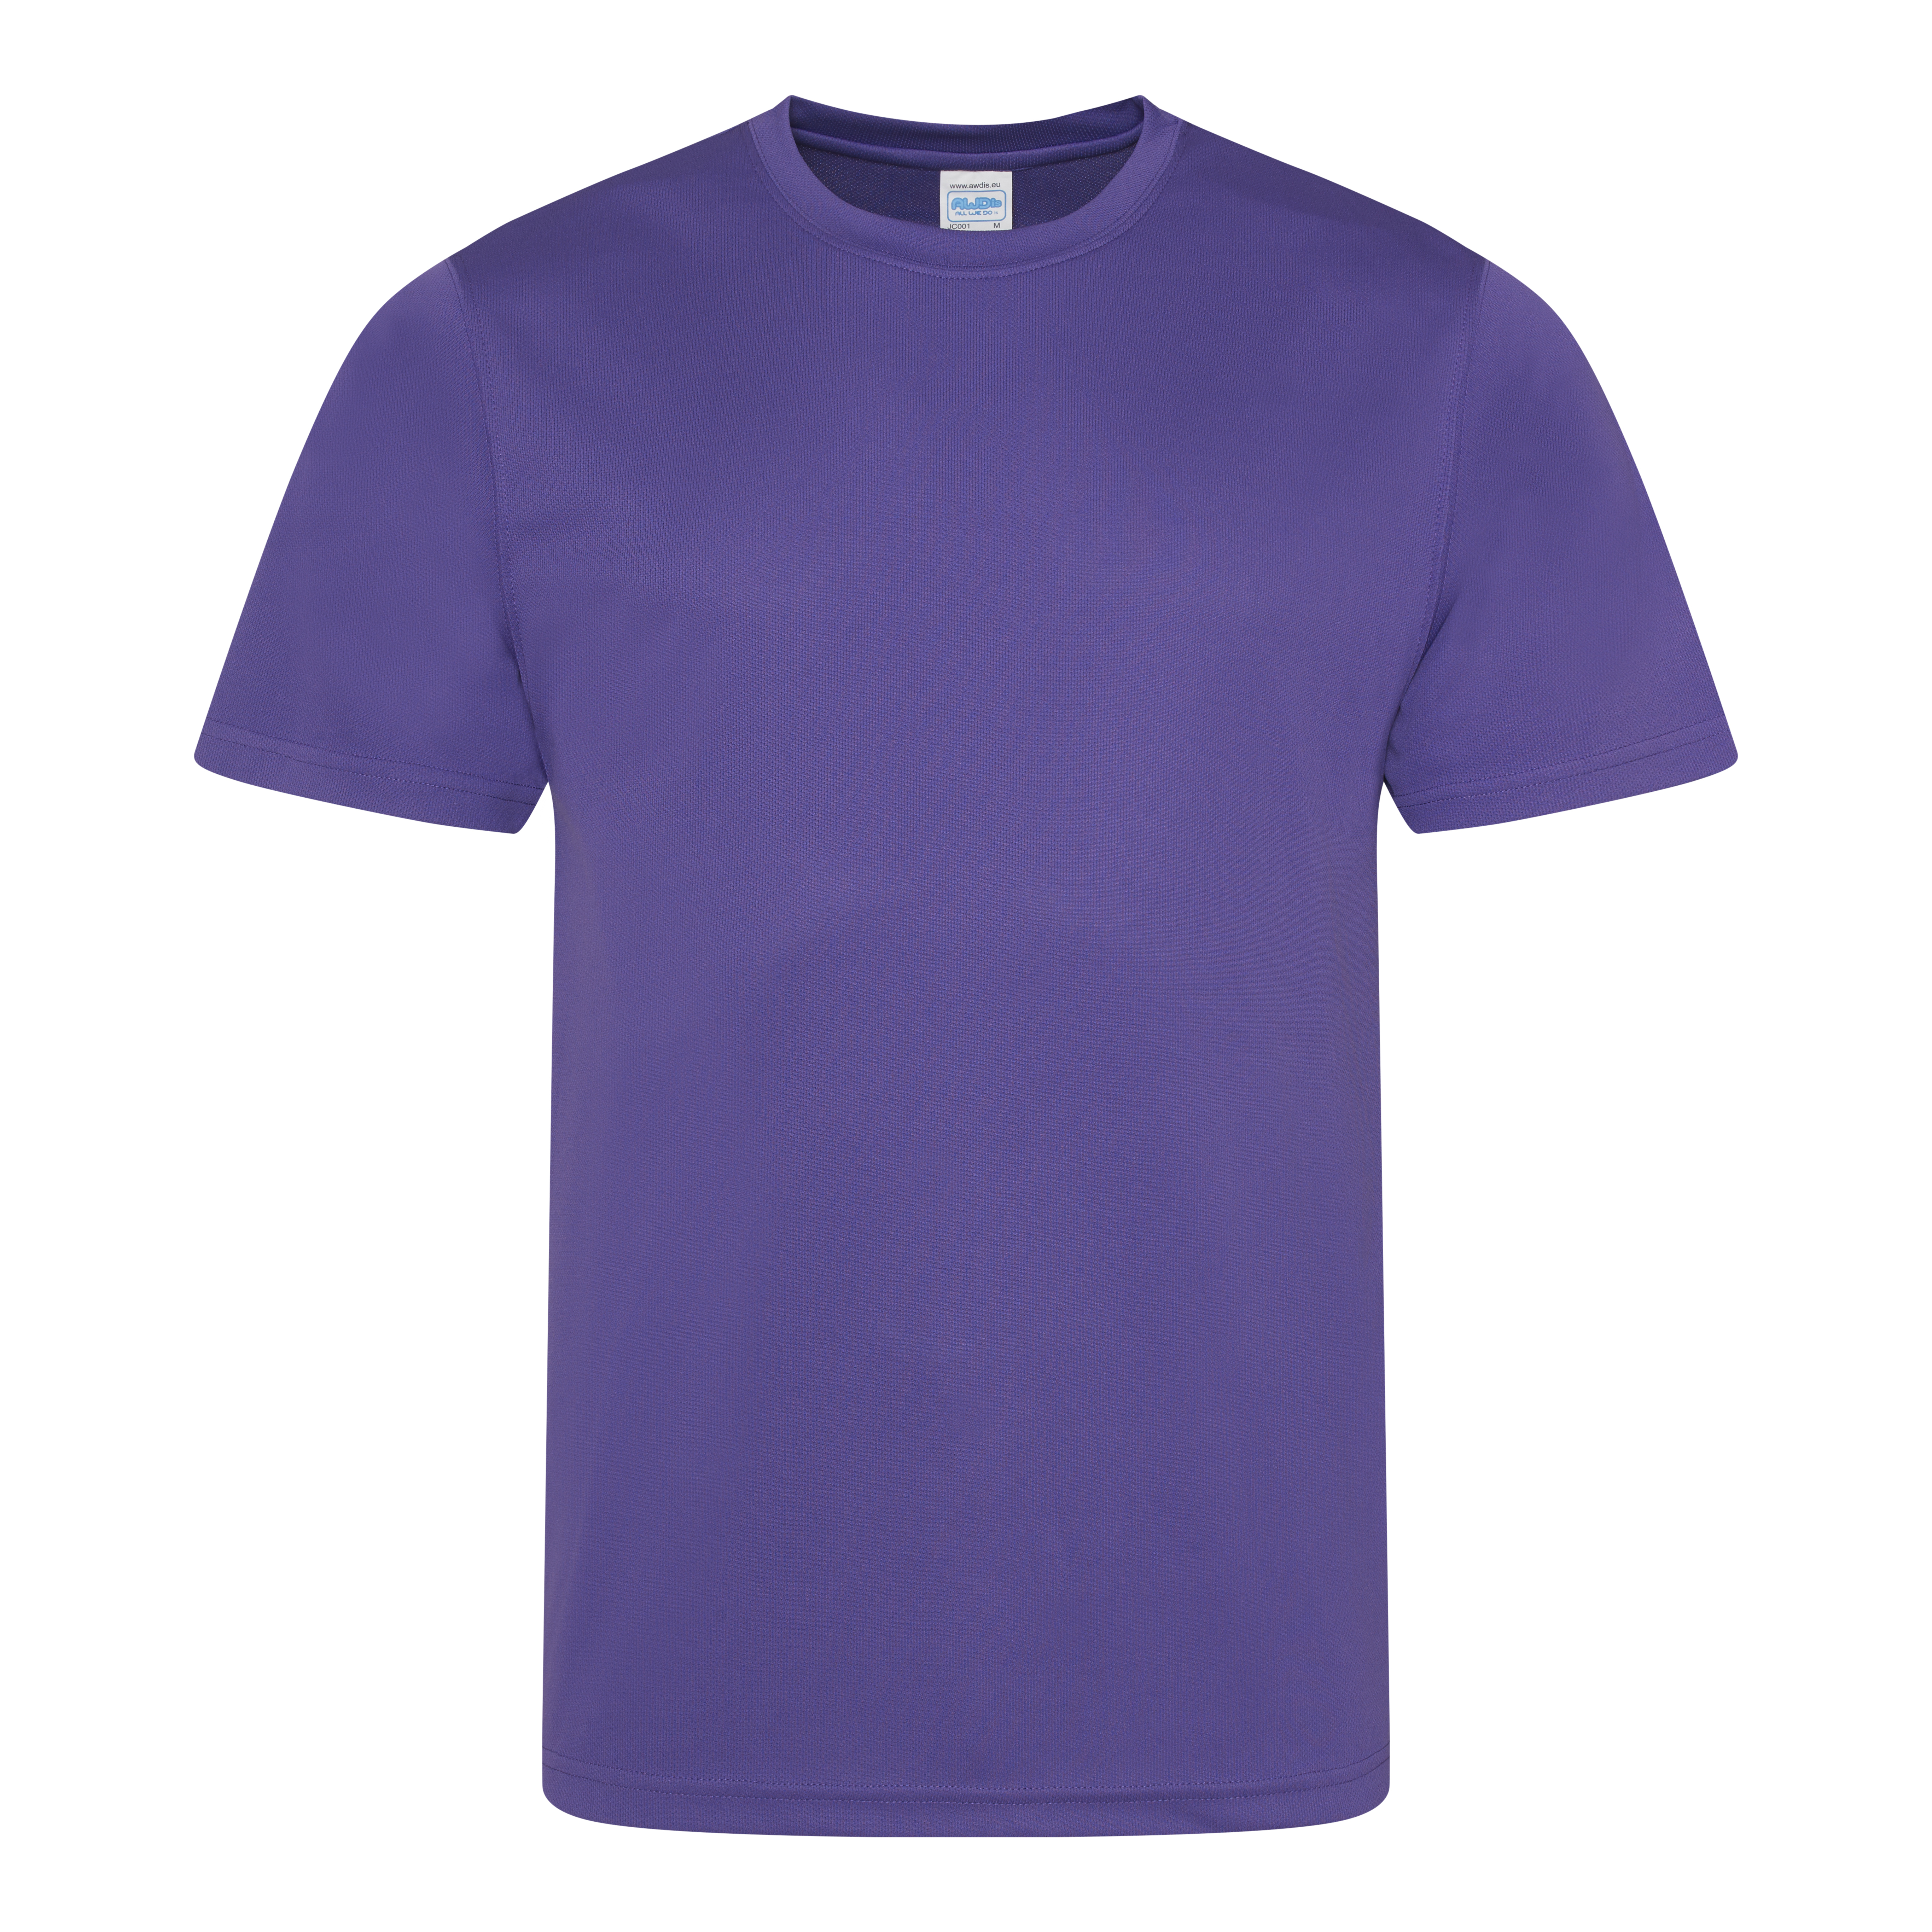 SHUDAGENG US Size Large Blank Custom T-Shirts Heat Transfer Heat  Sublimation Short Sleeve Purple L 